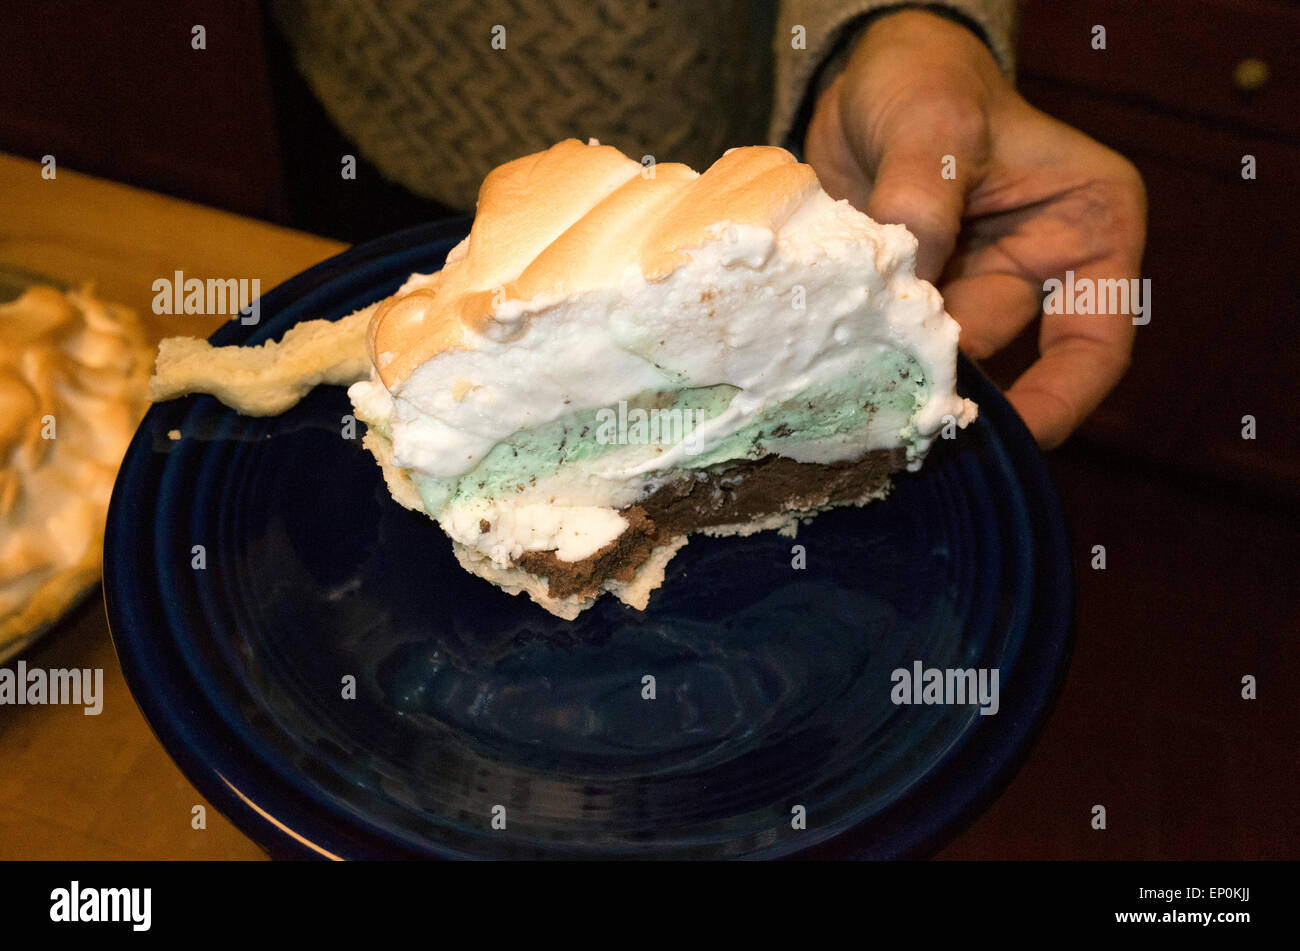 Un morceau d'Omelette dessert composé de crème glacée et du gâteau doré garni de meringue. St Paul Minnesota MN USA Banque D'Images